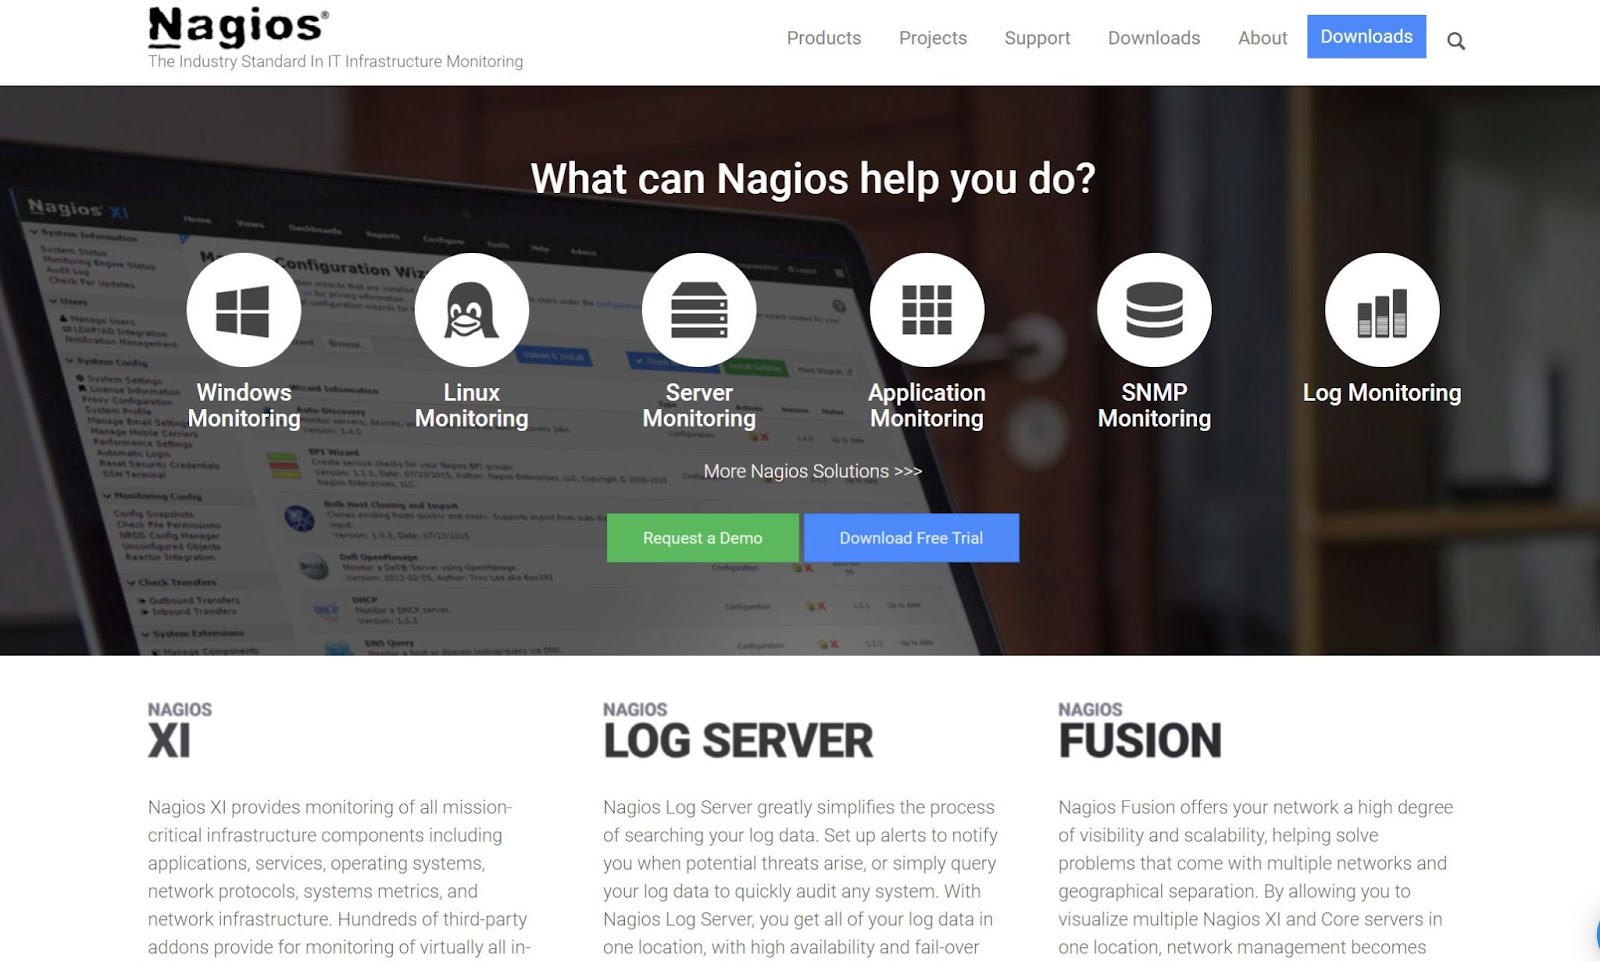 Nagios 主页的屏幕截图